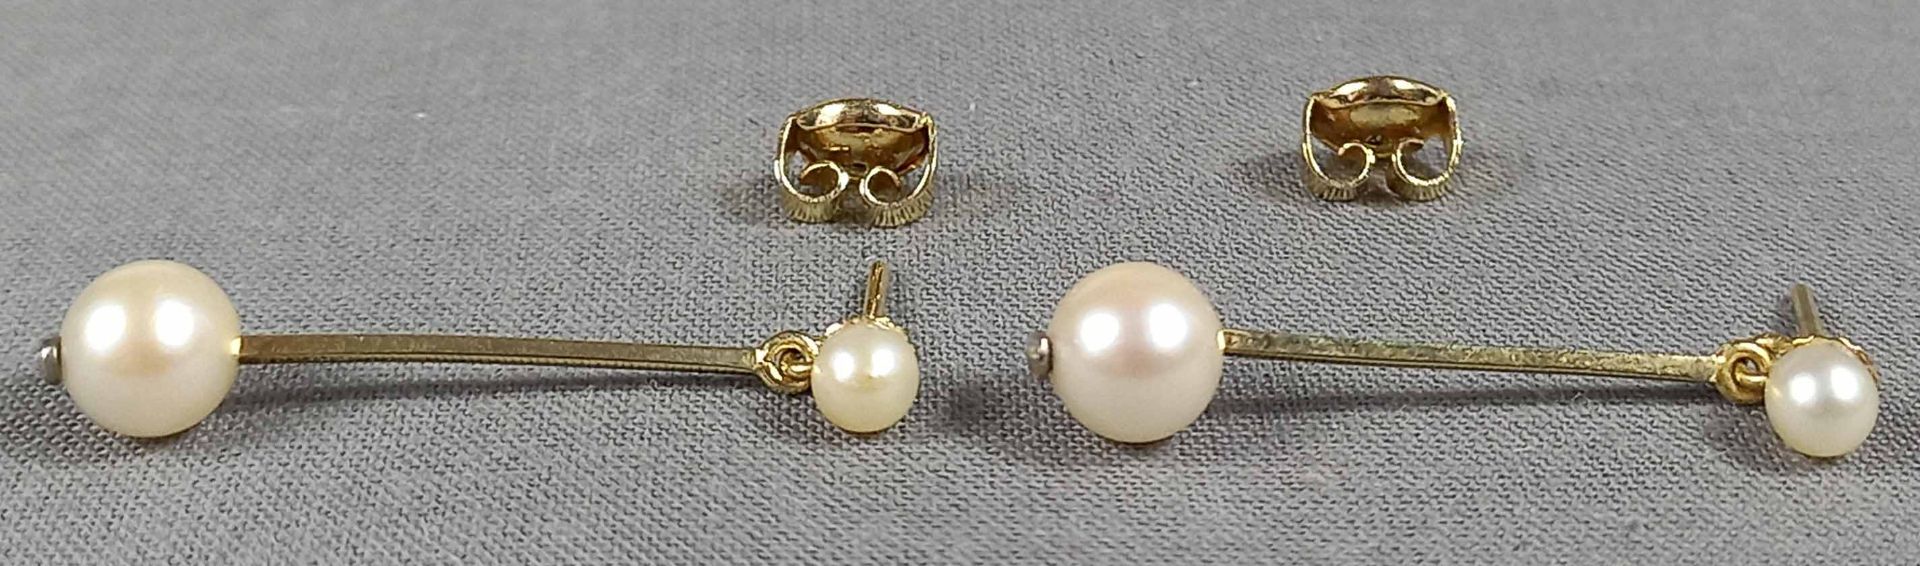 Collier mit passenden Ohrhängern. Gold 585. 6 Perlen. - Bild 11 aus 16